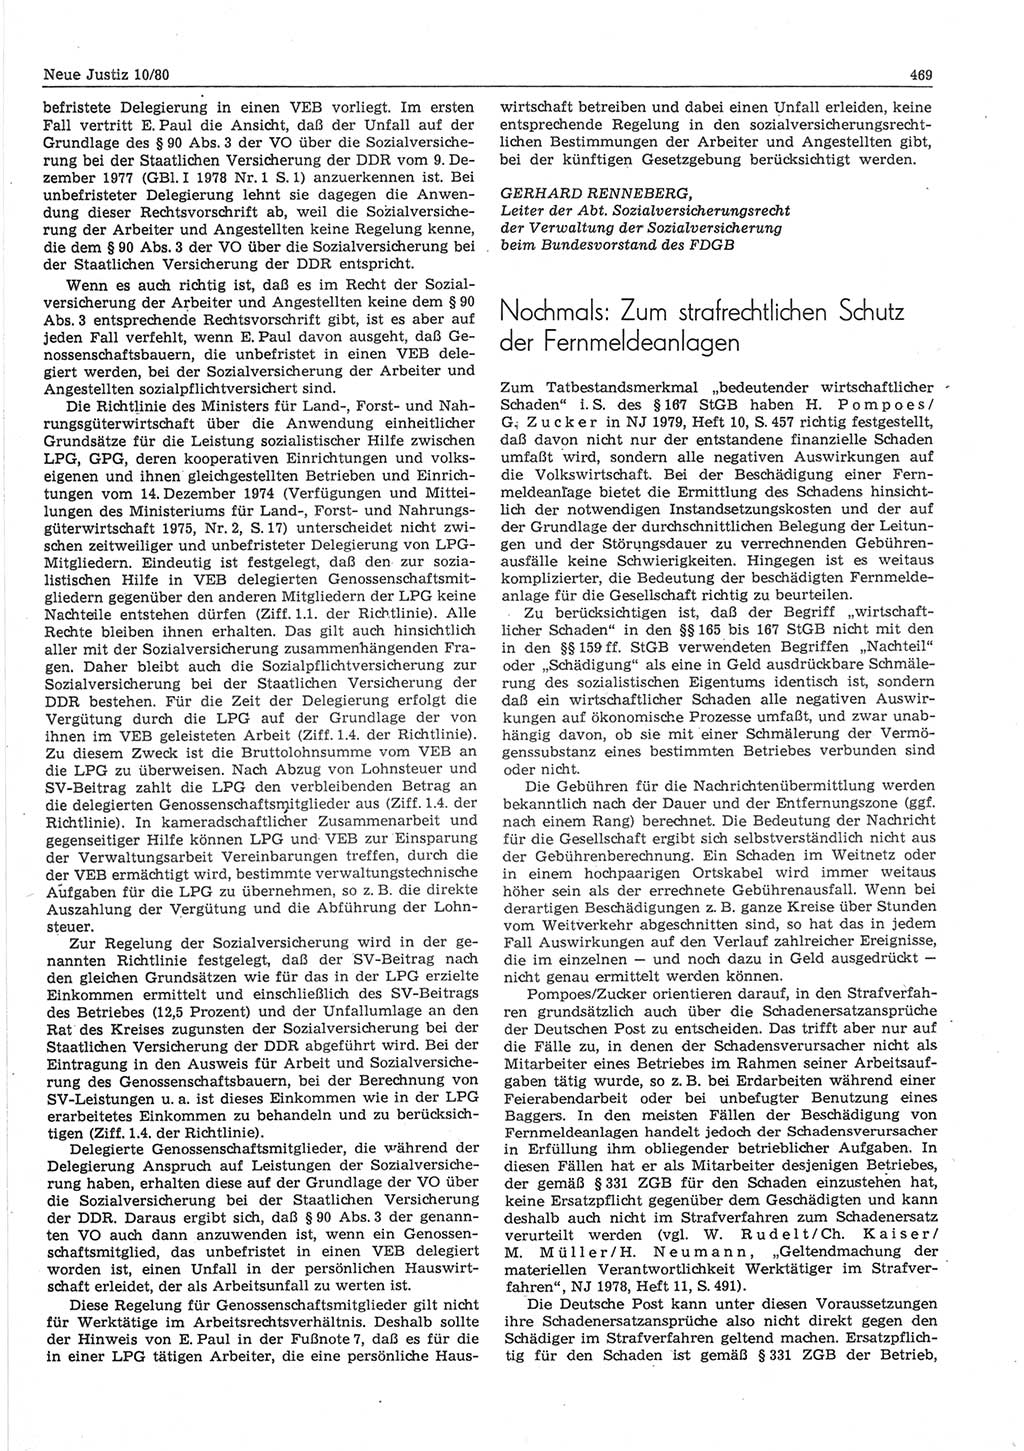 Neue Justiz (NJ), Zeitschrift für sozialistisches Recht und Gesetzlichkeit [Deutsche Demokratische Republik (DDR)], 34. Jahrgang 1980, Seite 469 (NJ DDR 1980, S. 469)